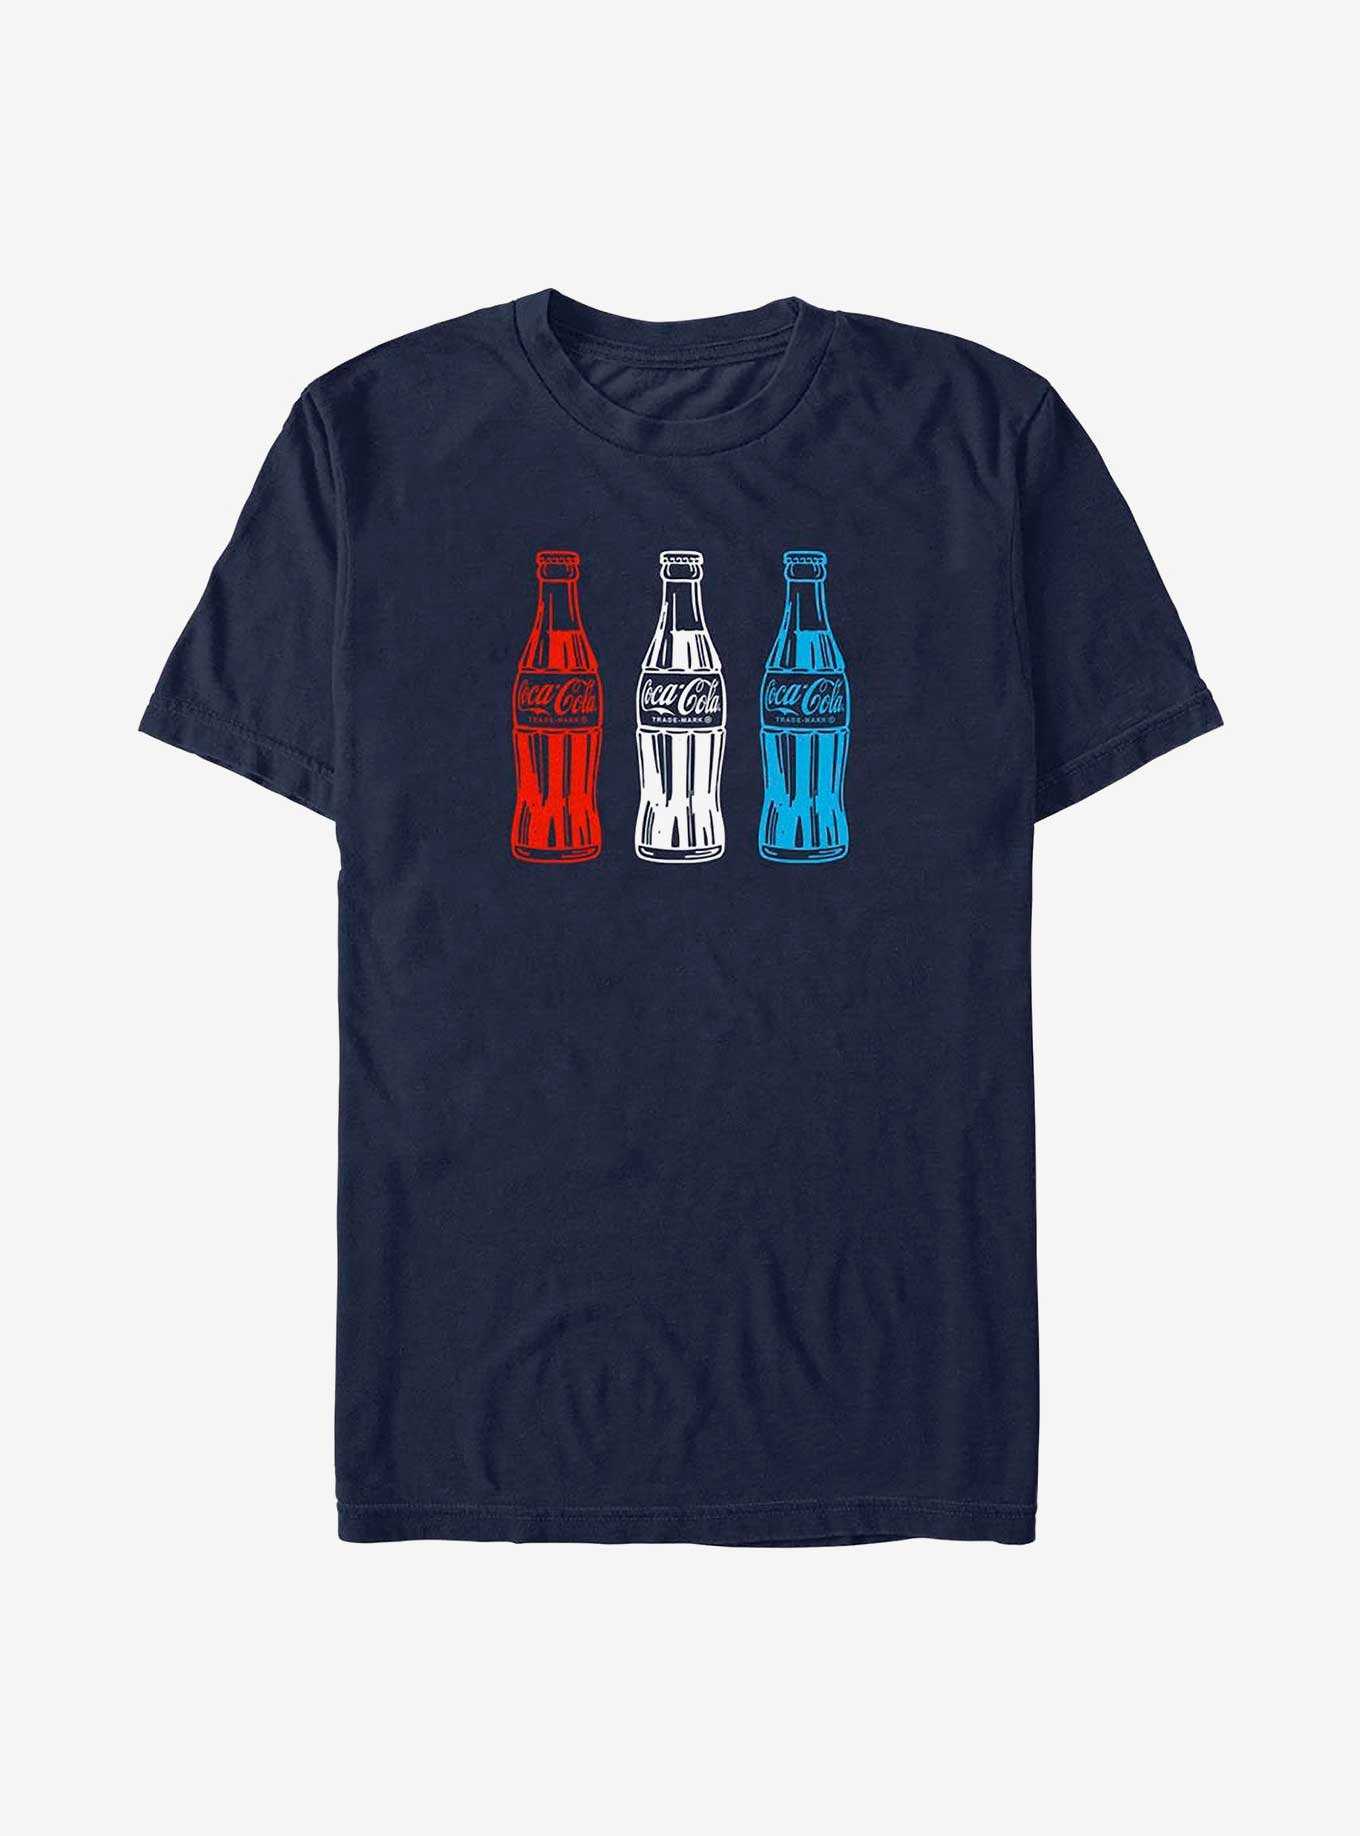 Coca-Cola Americana Bottles T-Shirt, , hi-res